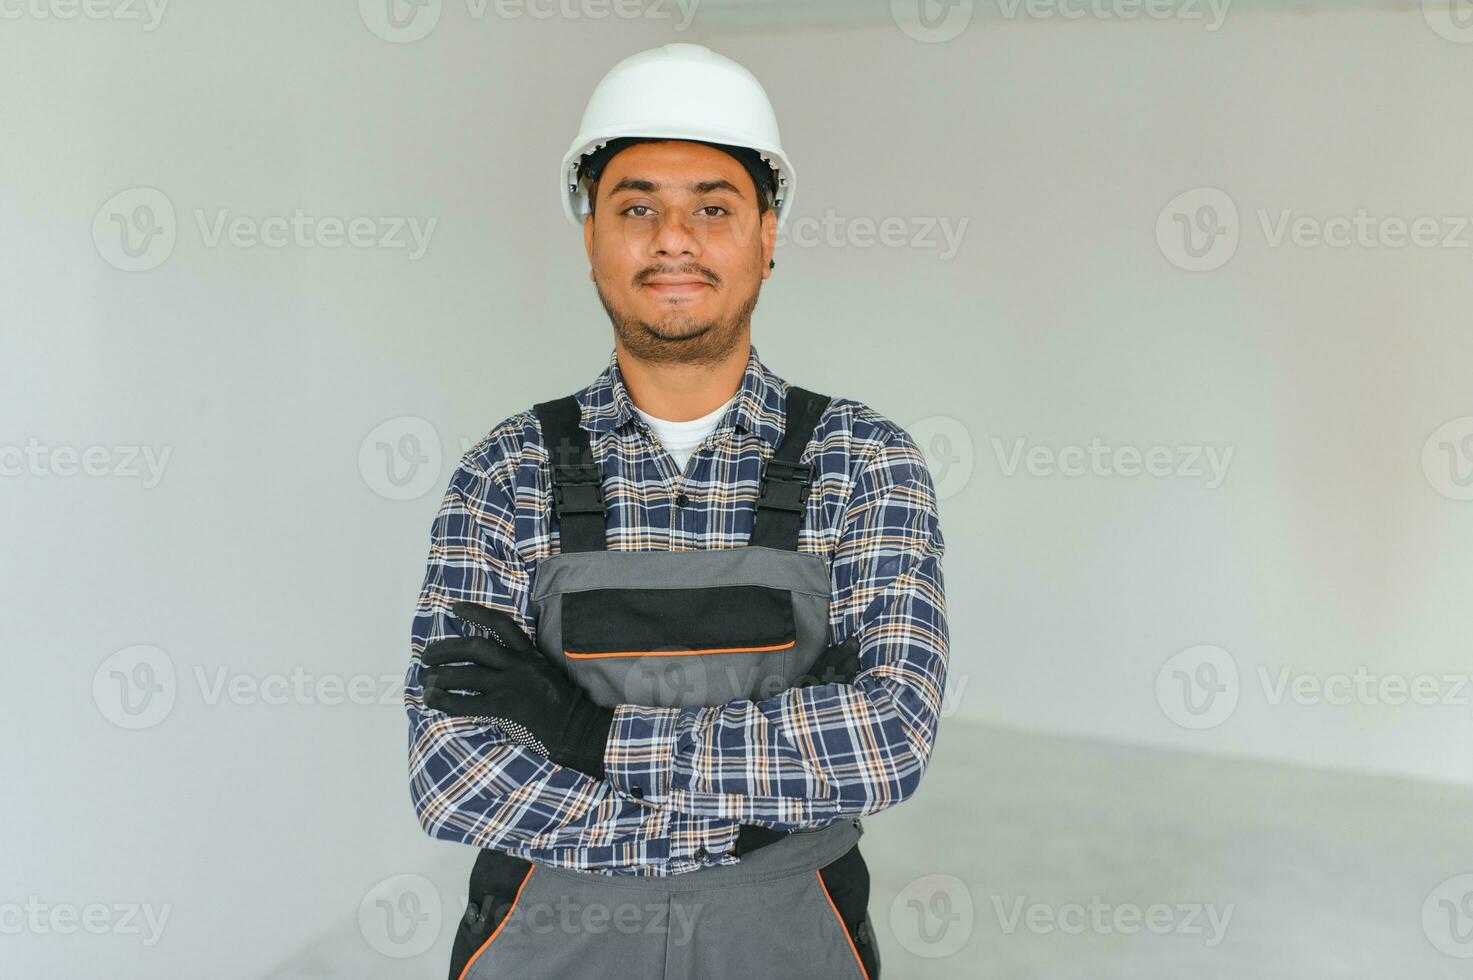 profesión, construcción y edificio - contento sonriente indio trabajador o constructor en casco terminado gris antecedentes. foto